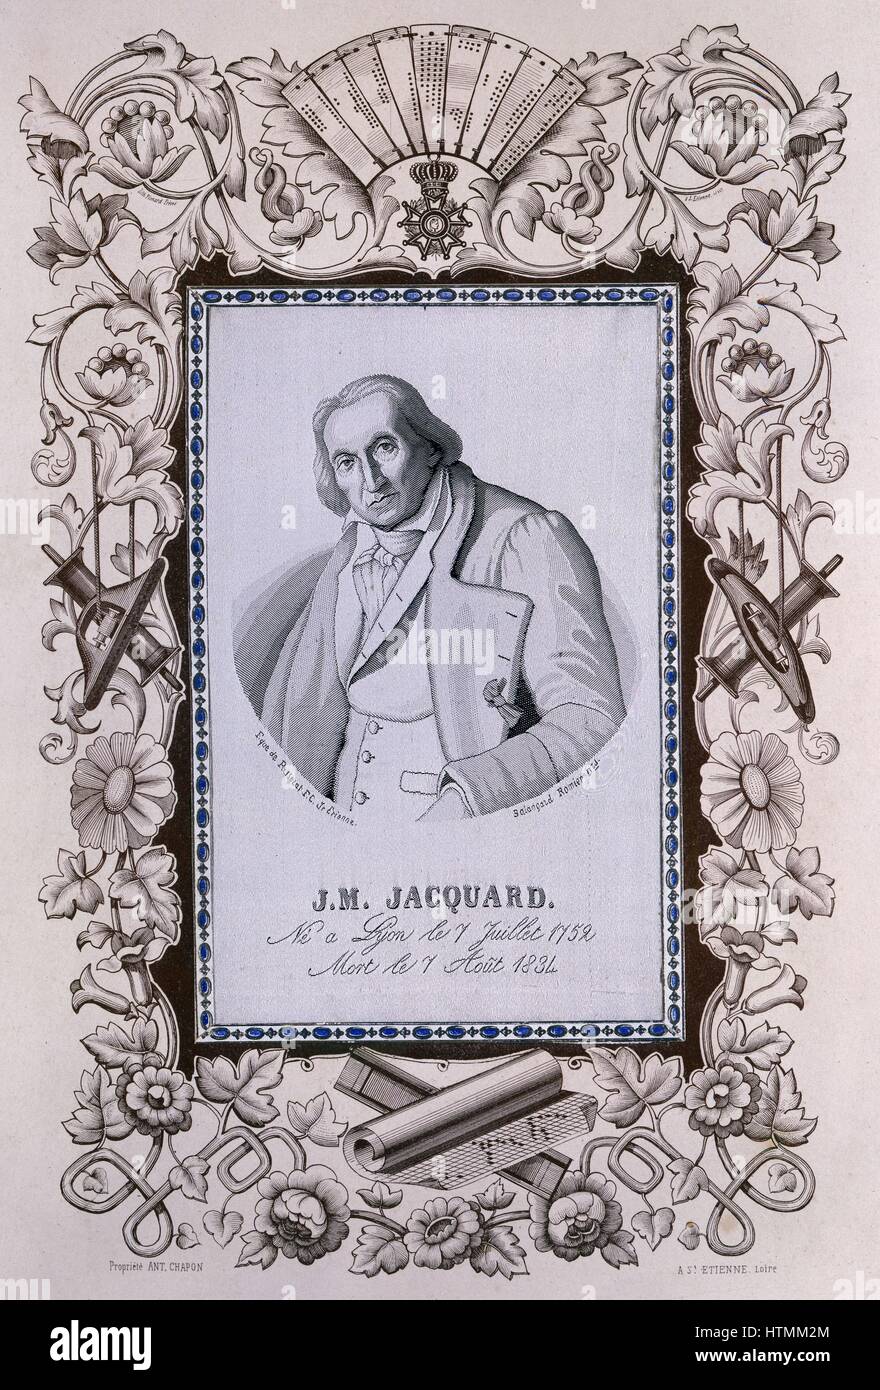 Joseph Marie Jacquqrd (1752-1834) francese seta-weaver e inventore. Ritratto tessuti a telaio Jacquard, circondato da confine stampato che mostra le schede perforate, carta per la progettazione di schemi, navette, bobine, ecc. Colore Foto Stock